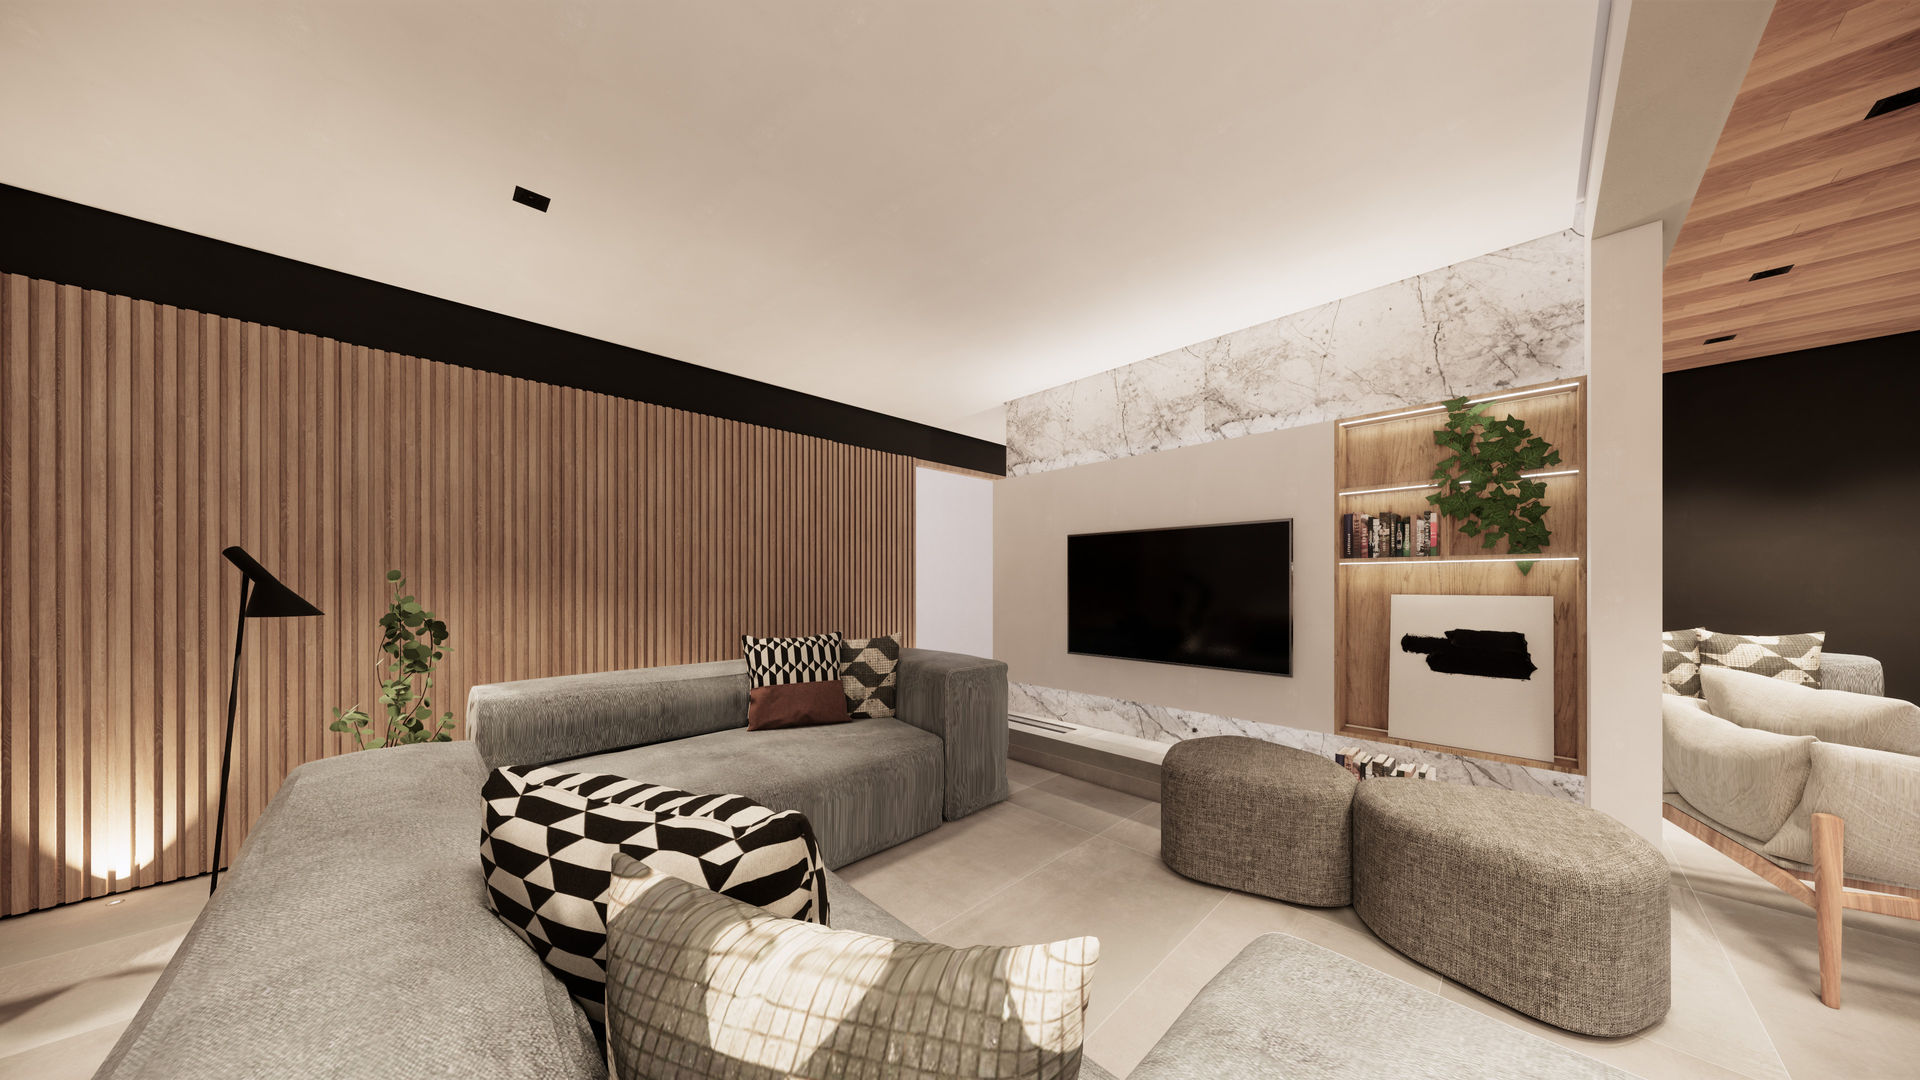 Apartamento Clean com elementos em Madeira, Saulo Magno Arquiteto Saulo Magno Arquiteto Living room Wood Wood effect